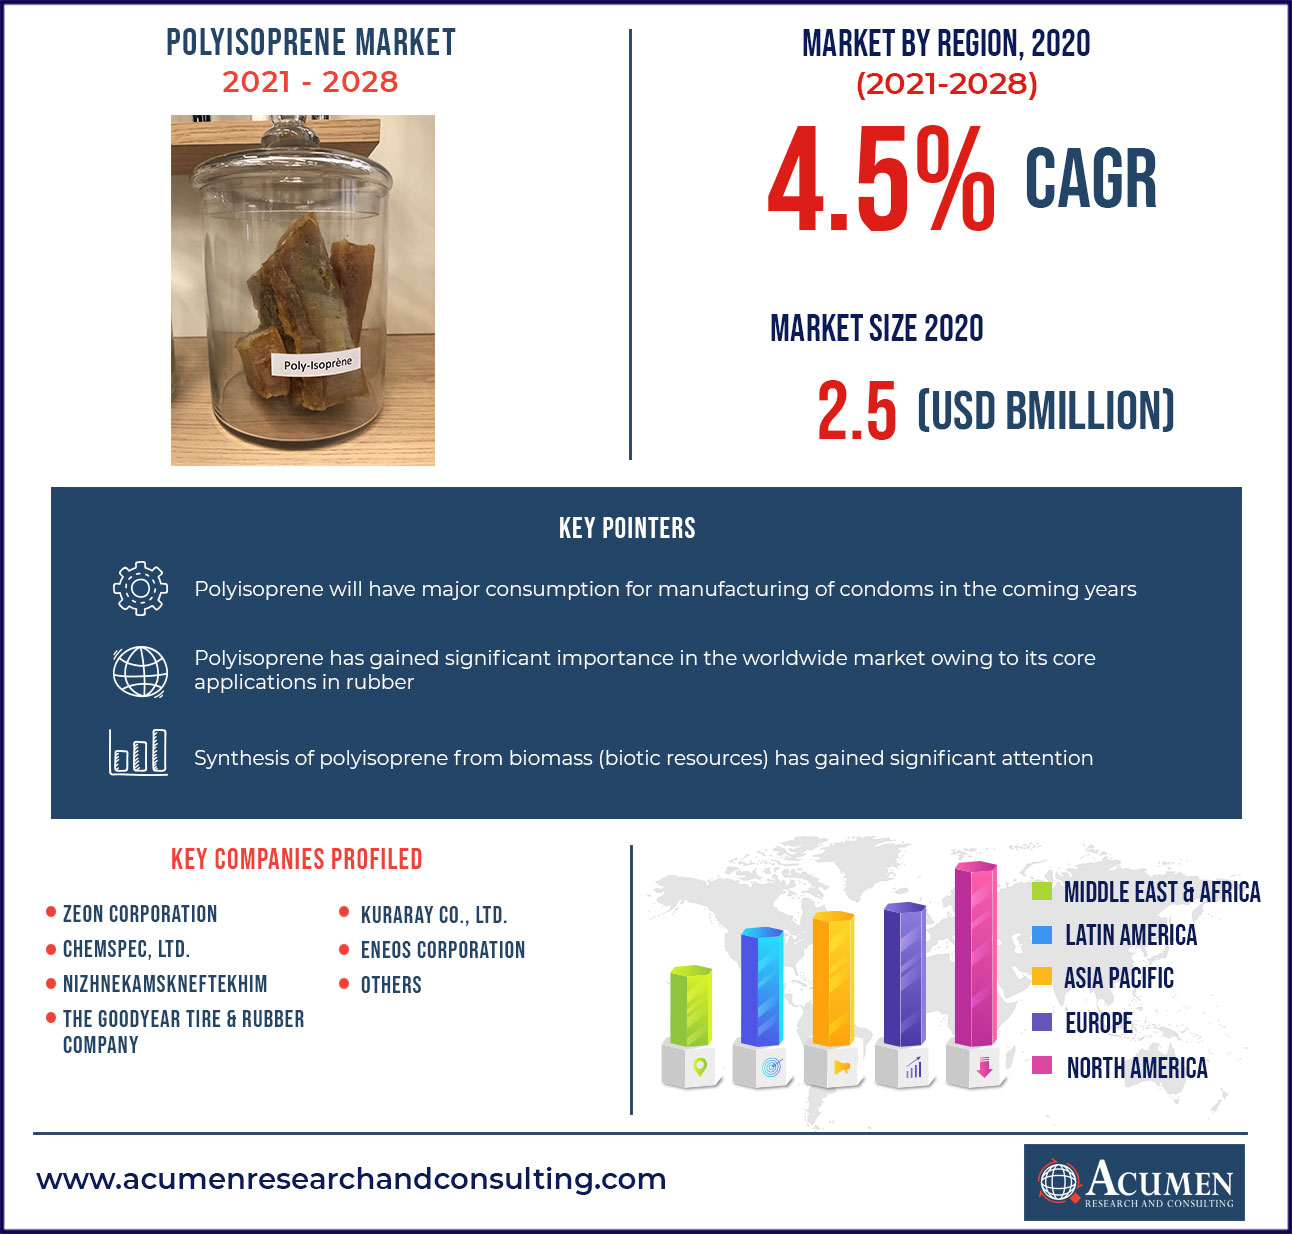 Polyisoprene Market Overview 2021-2028